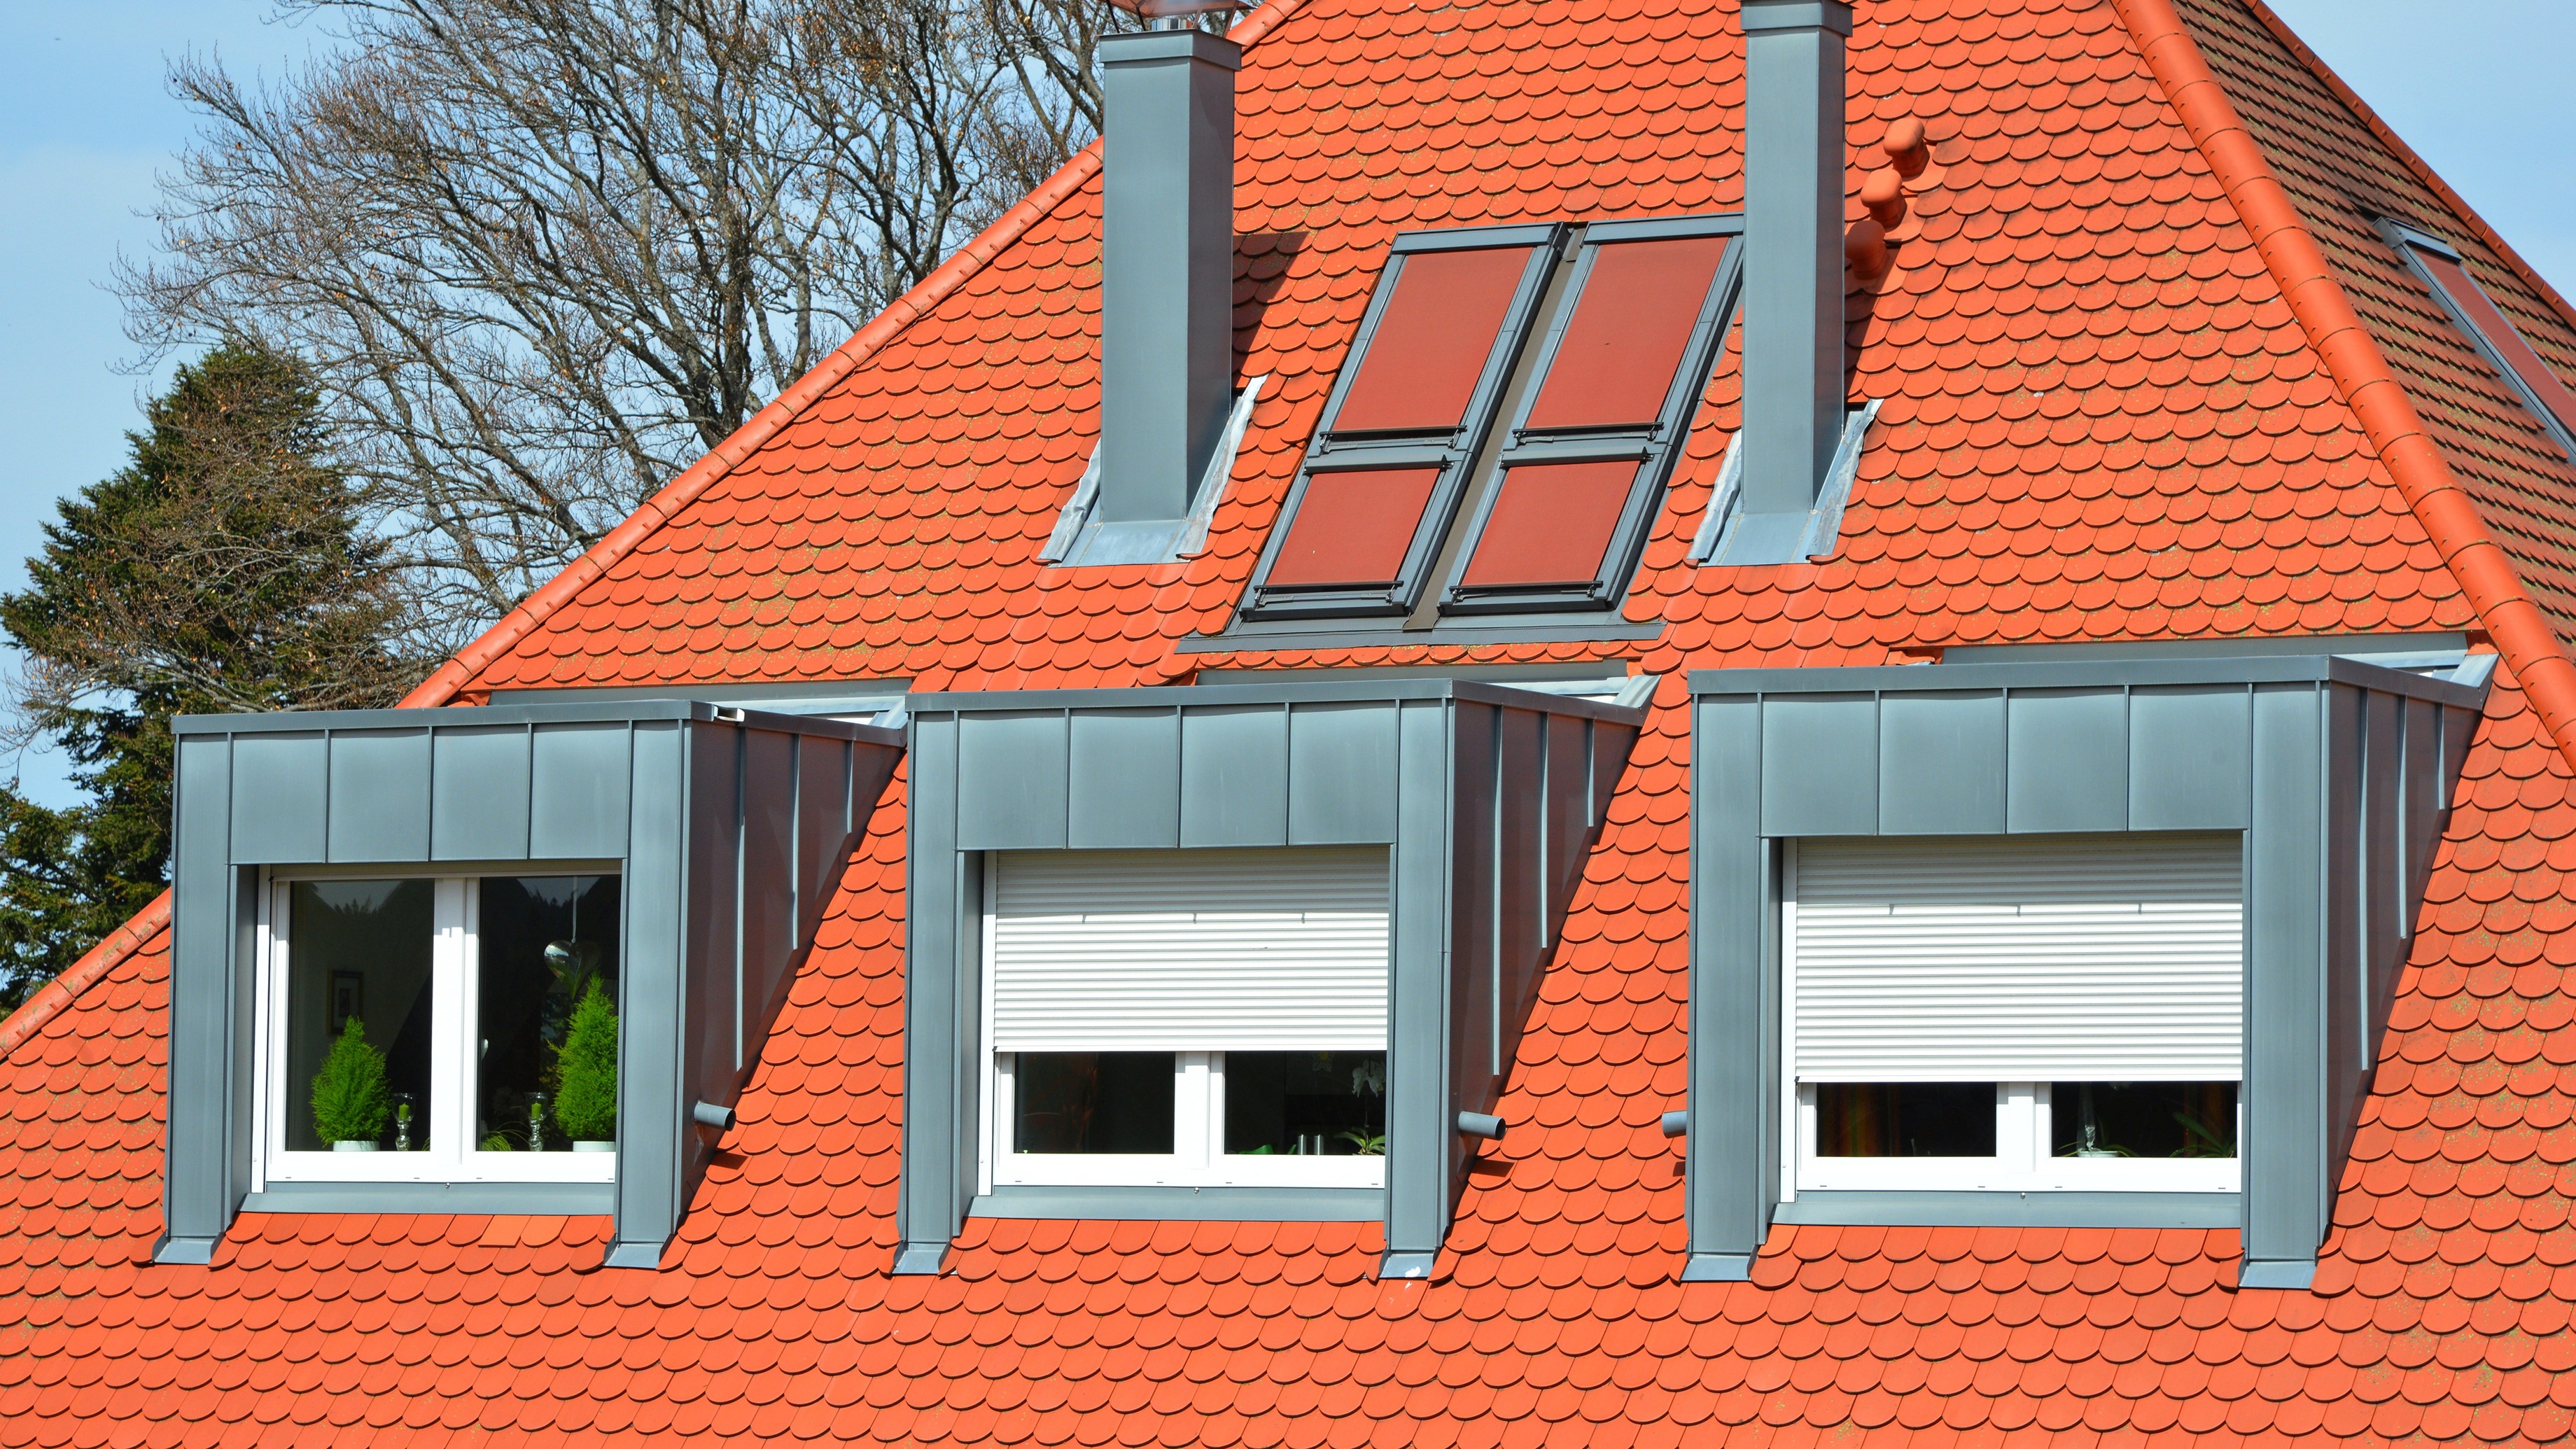 Sonnenschutz am Fenster – Optimierung des Wohnkomforts und der